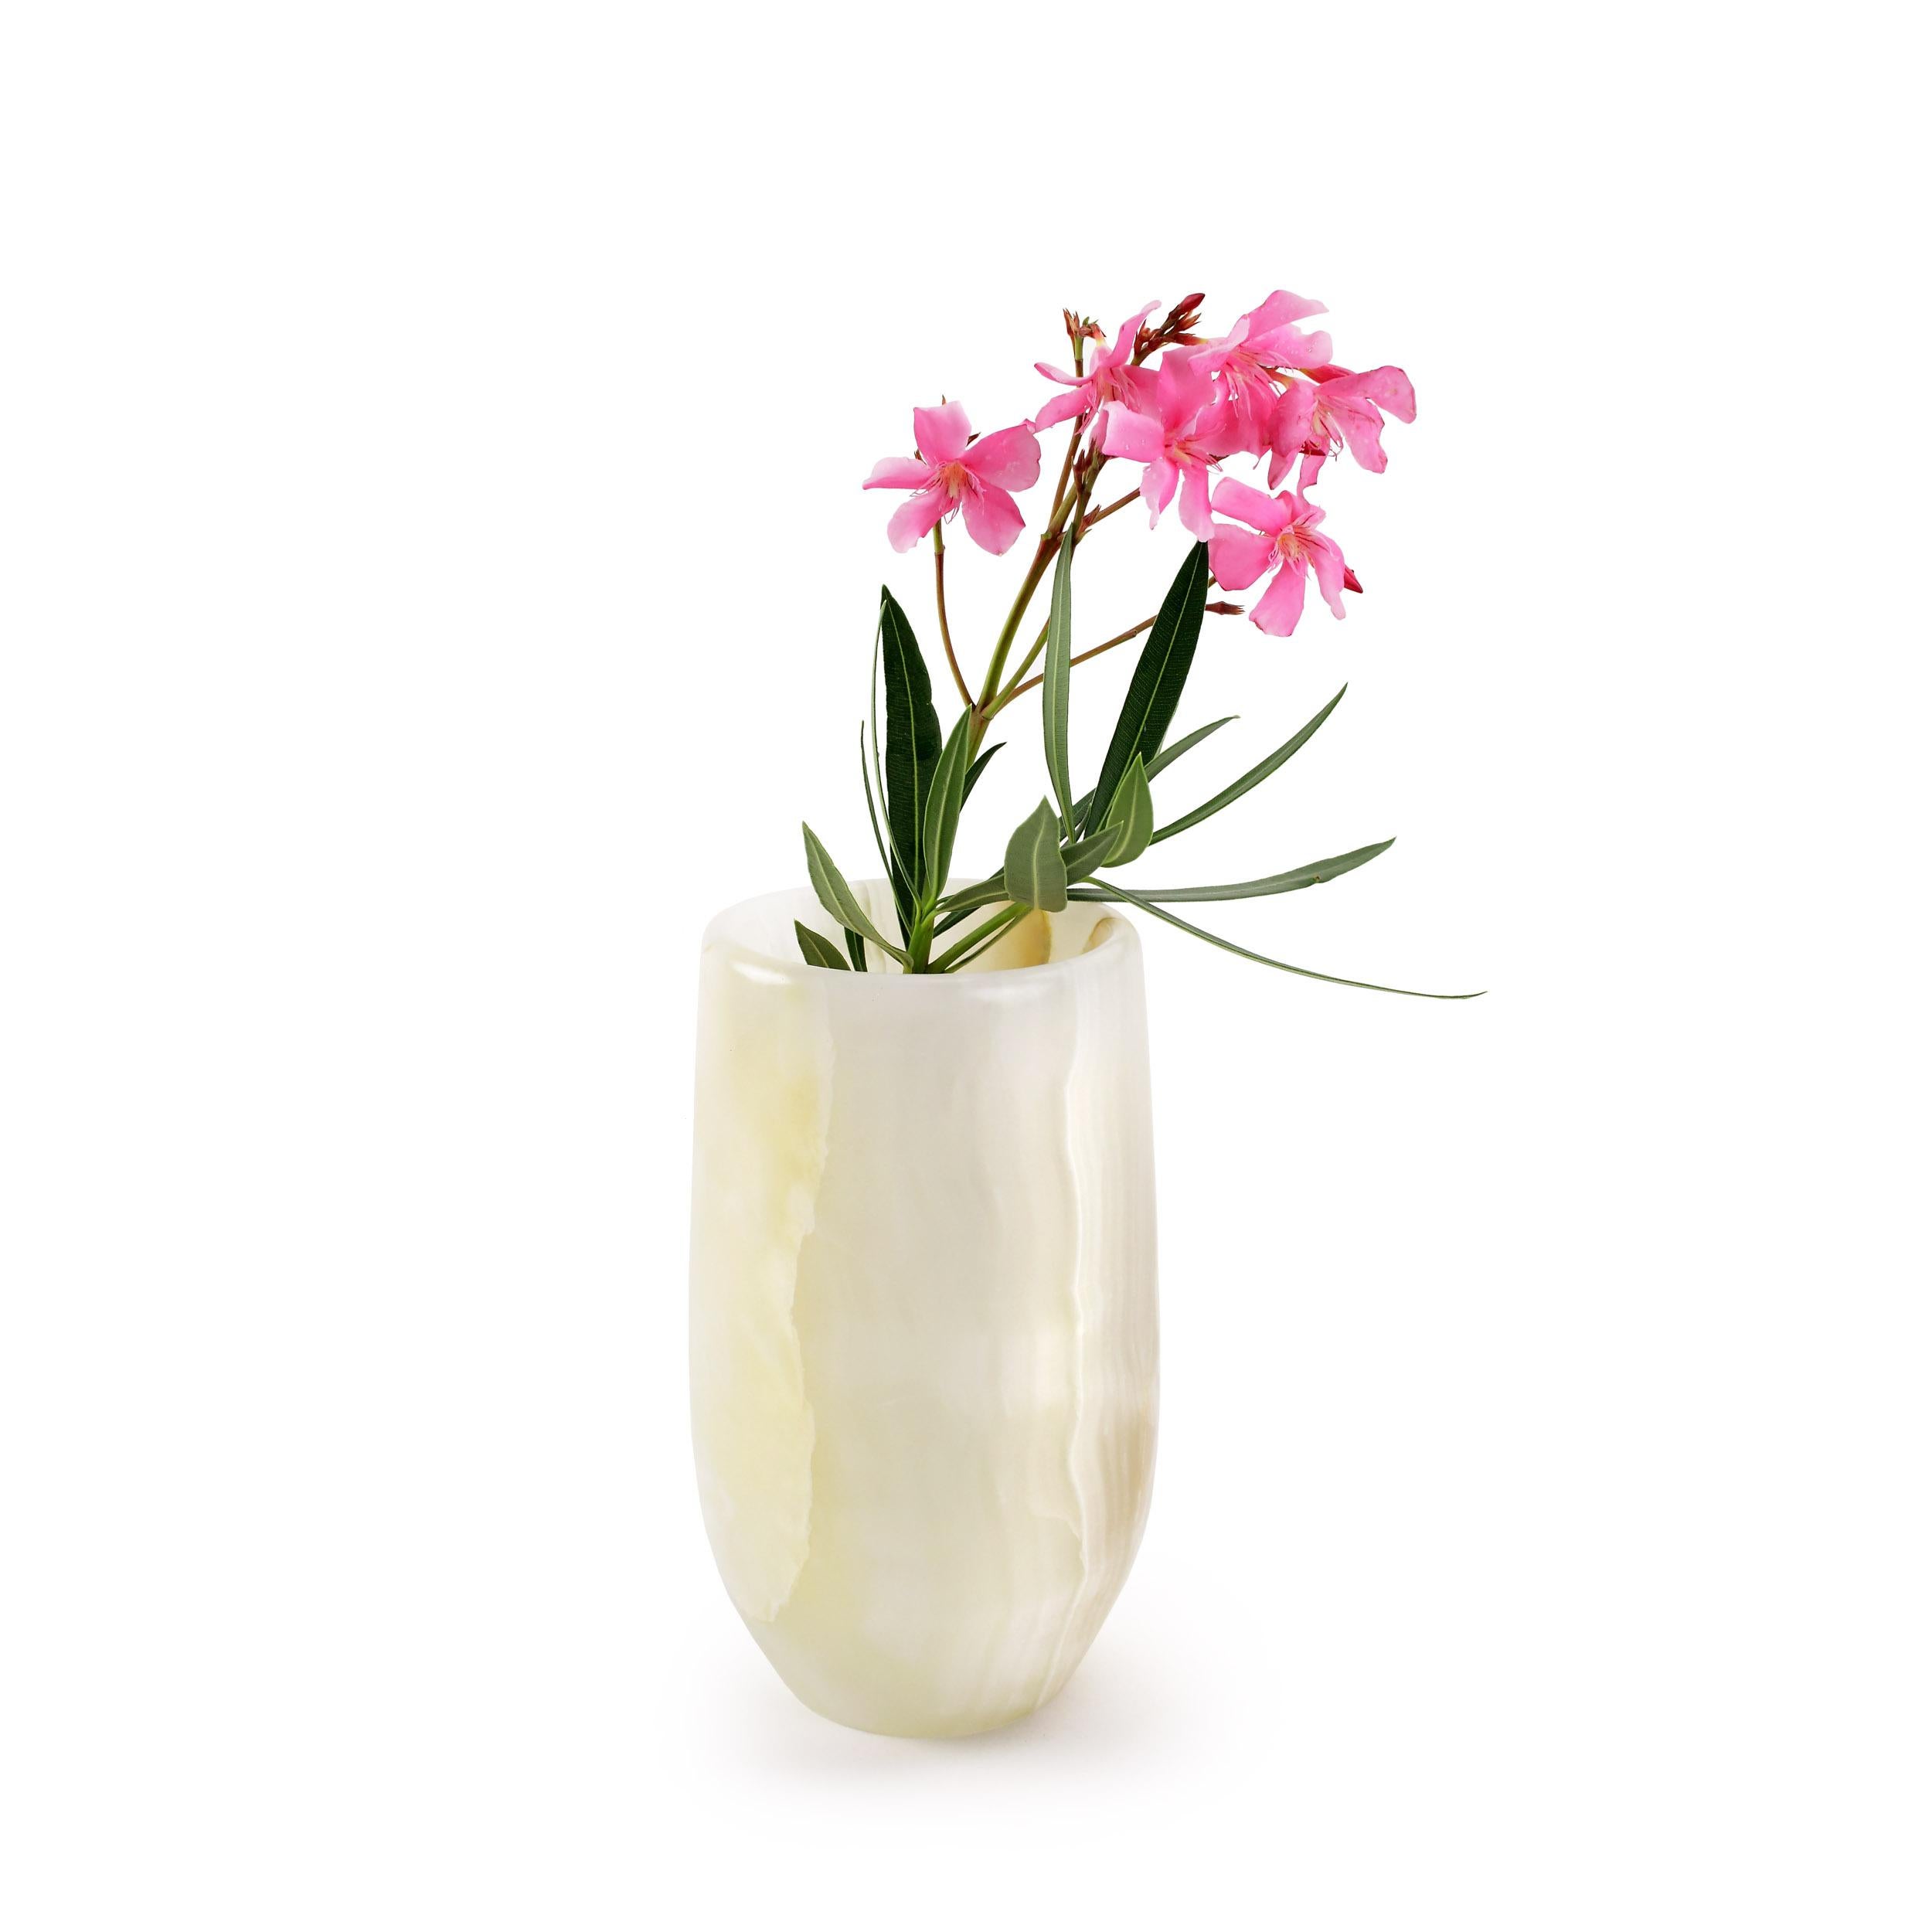 Luxuriöse kleine Vase, von Hand aus einem massiven Block aus weißem Onyx geformt. 

Abmessungen der Vase: D 13, H 22 cm. Die polierte Oberfläche unterstreicht die Transparenz des Onyx und macht ihn zu einem sehr wertvollen Objekt.
Erhältlich in